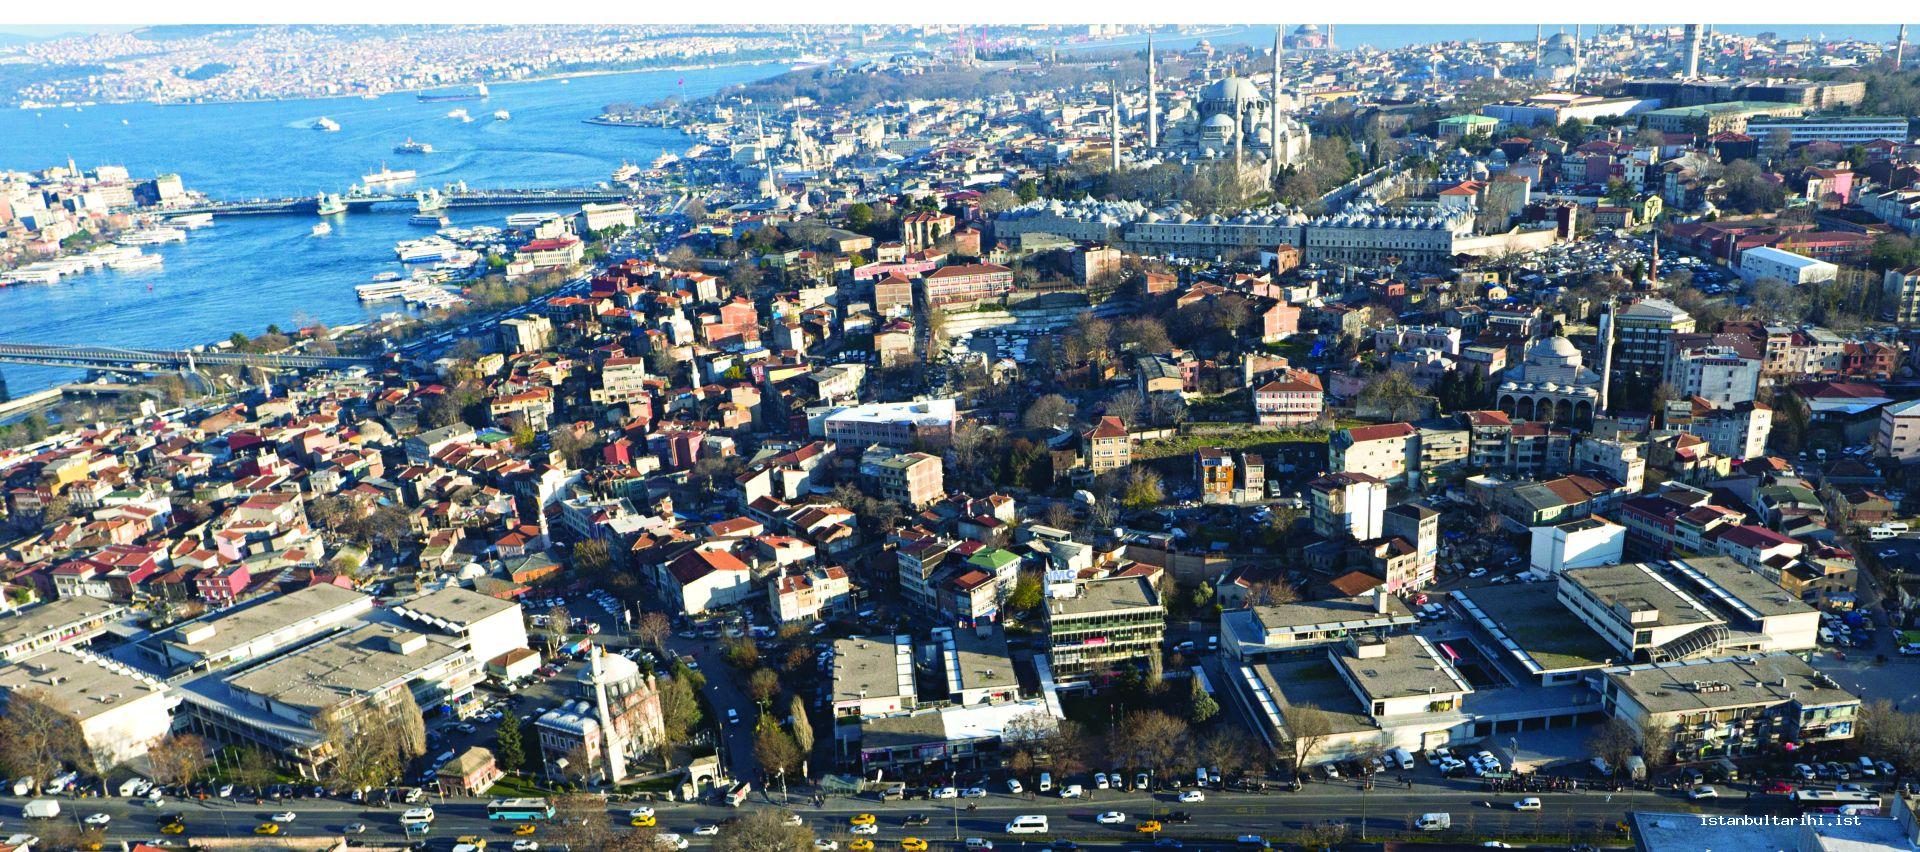 28- İstanbul Manifaturacılar ve Kumaşçılar Çarşısı (İMÇ)